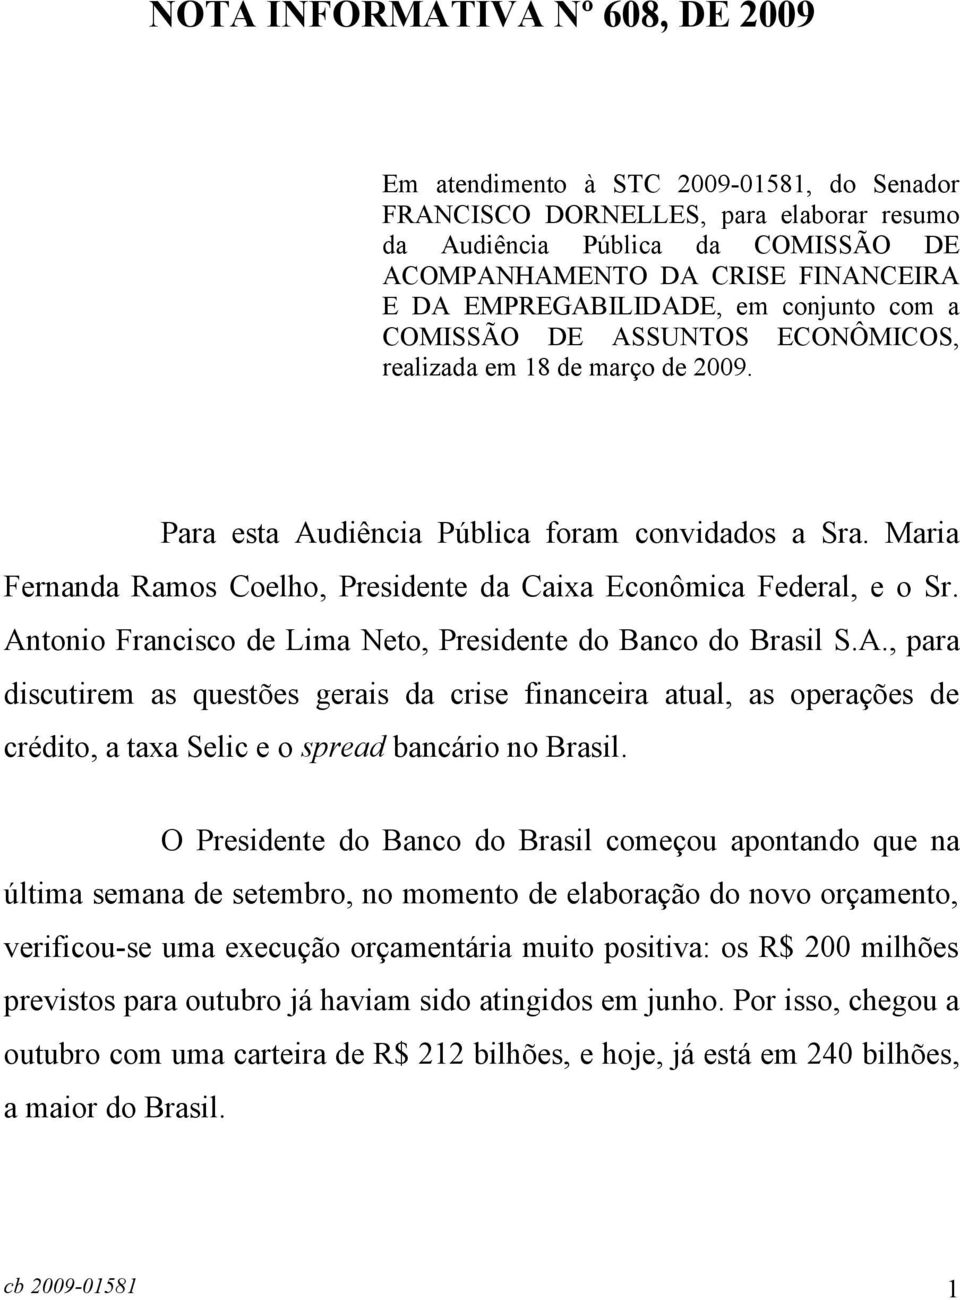 Maria Fernanda Ramos Coelho, Presidente da Caixa Econômica Federal, e o Sr. An